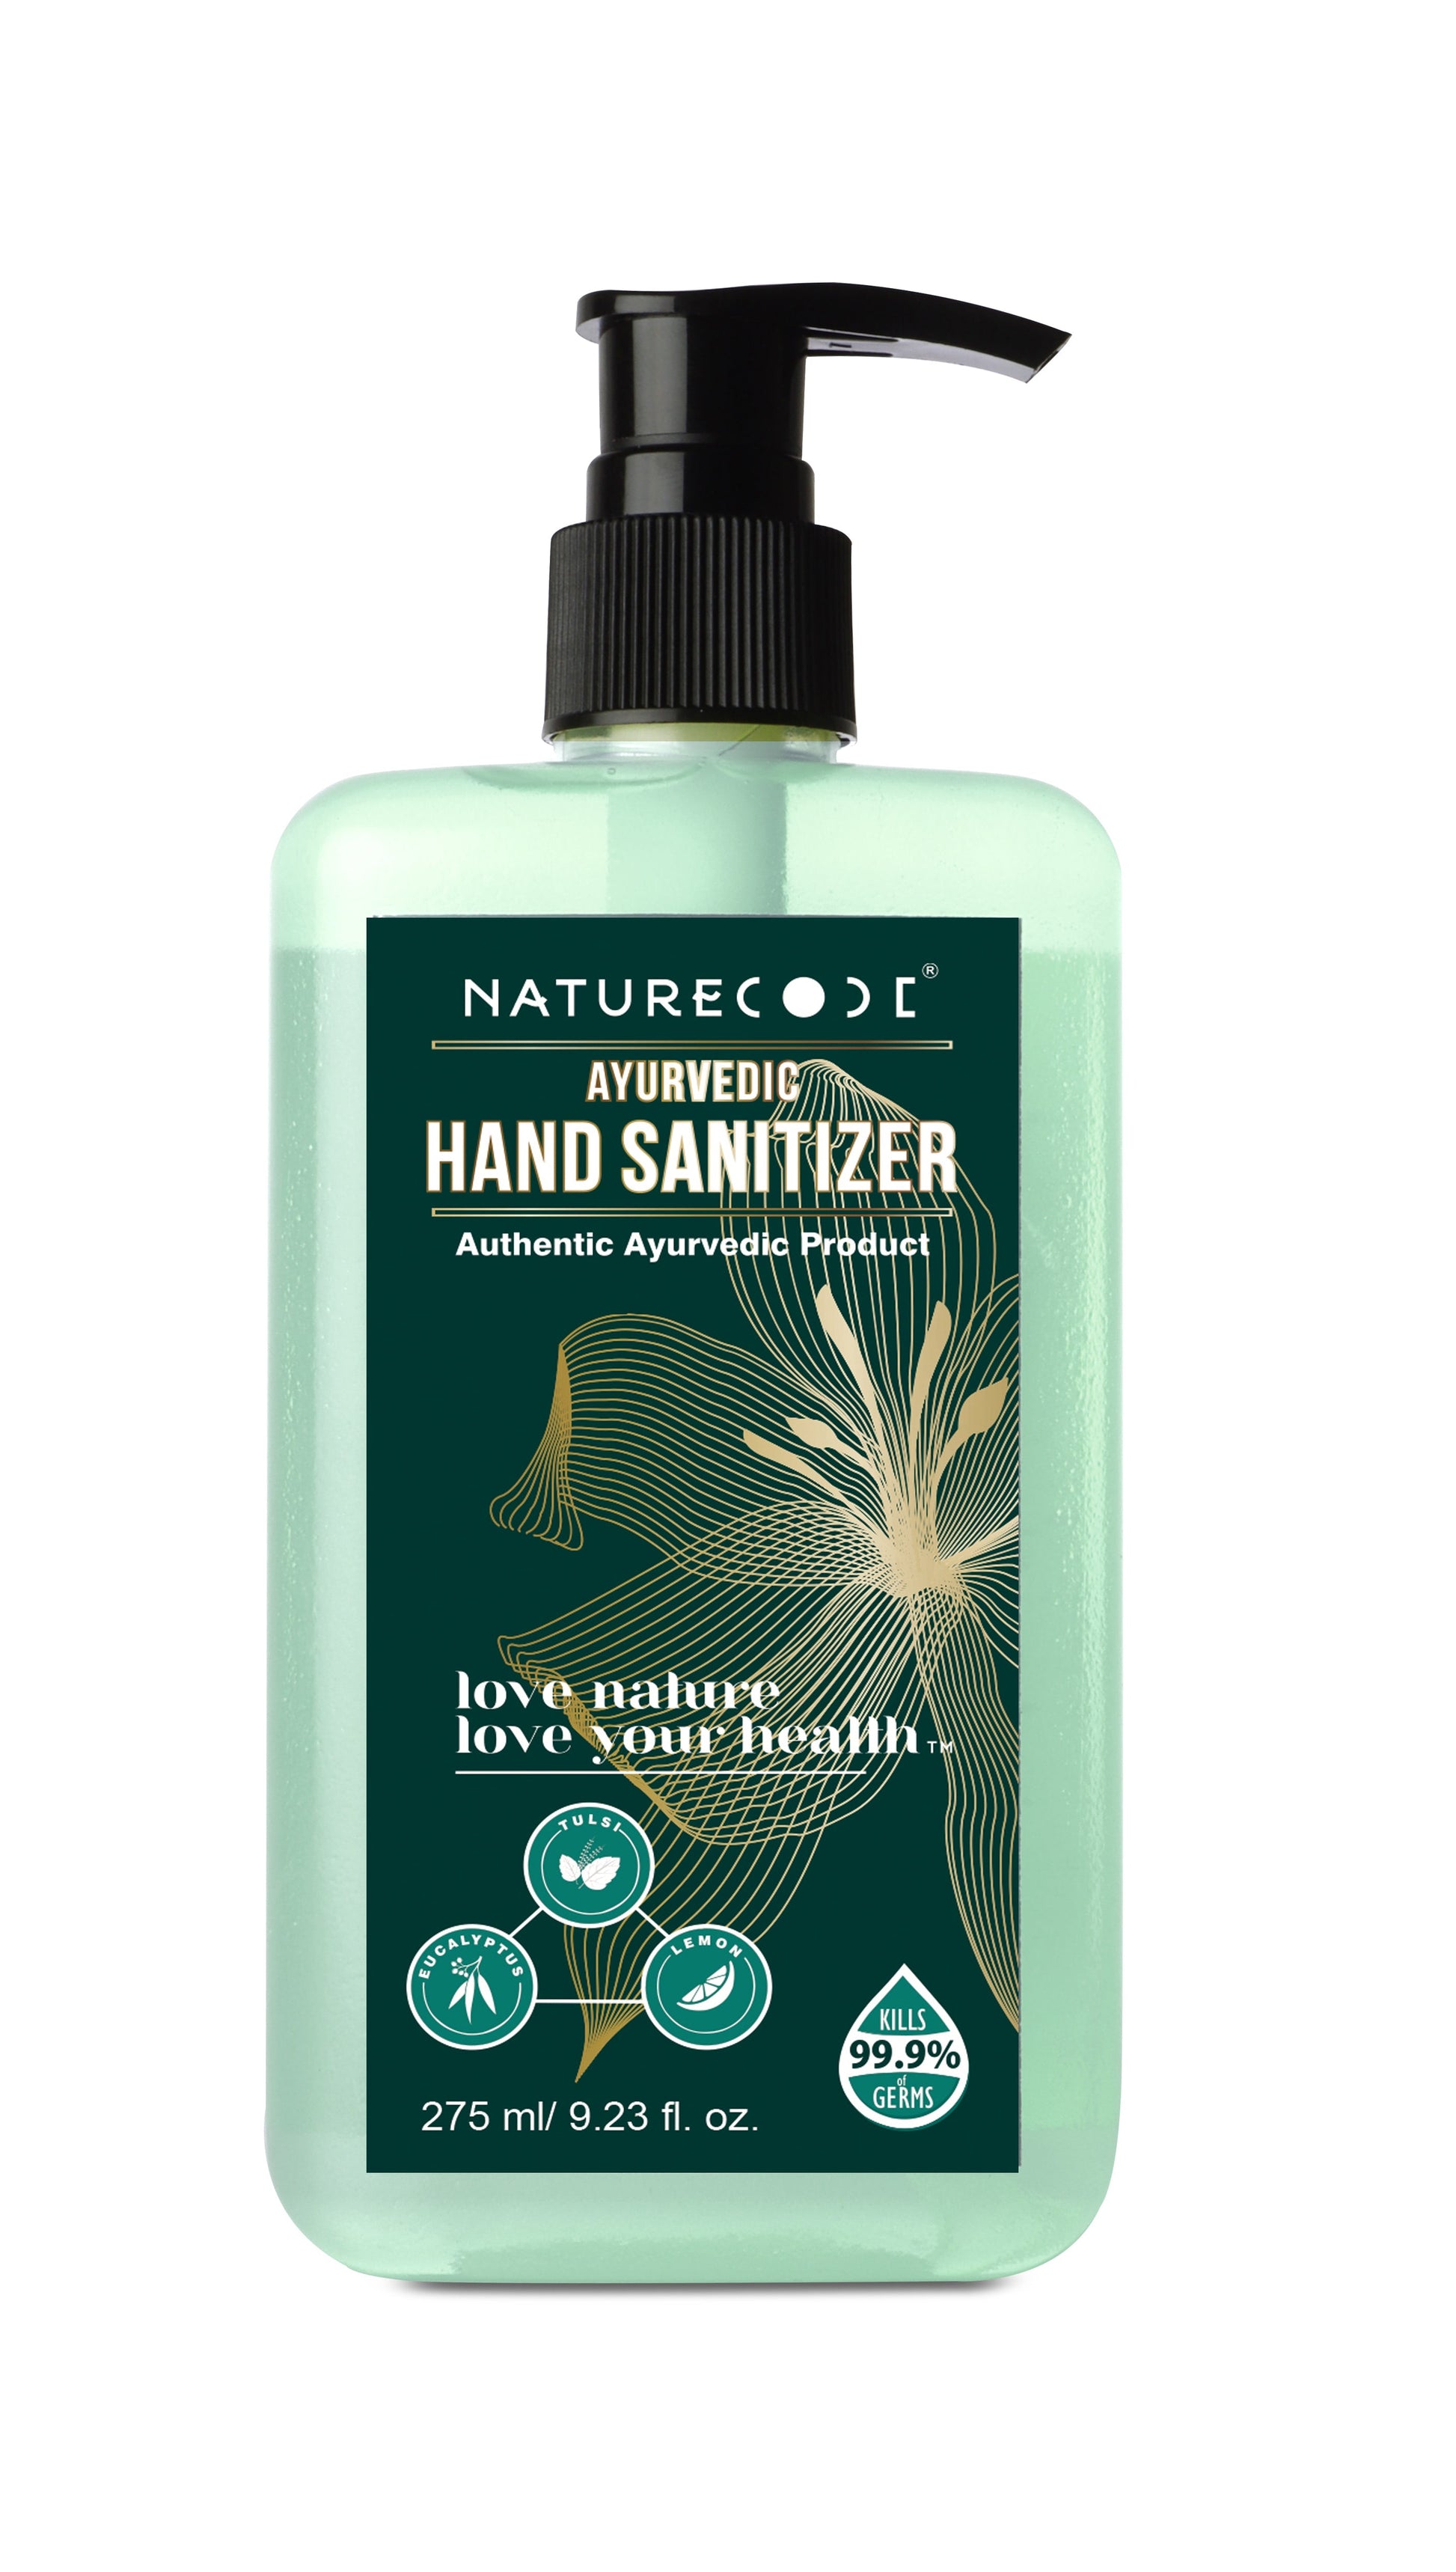 Ayurvedic Hand Sanitizer (275ml) Naturecodeindia